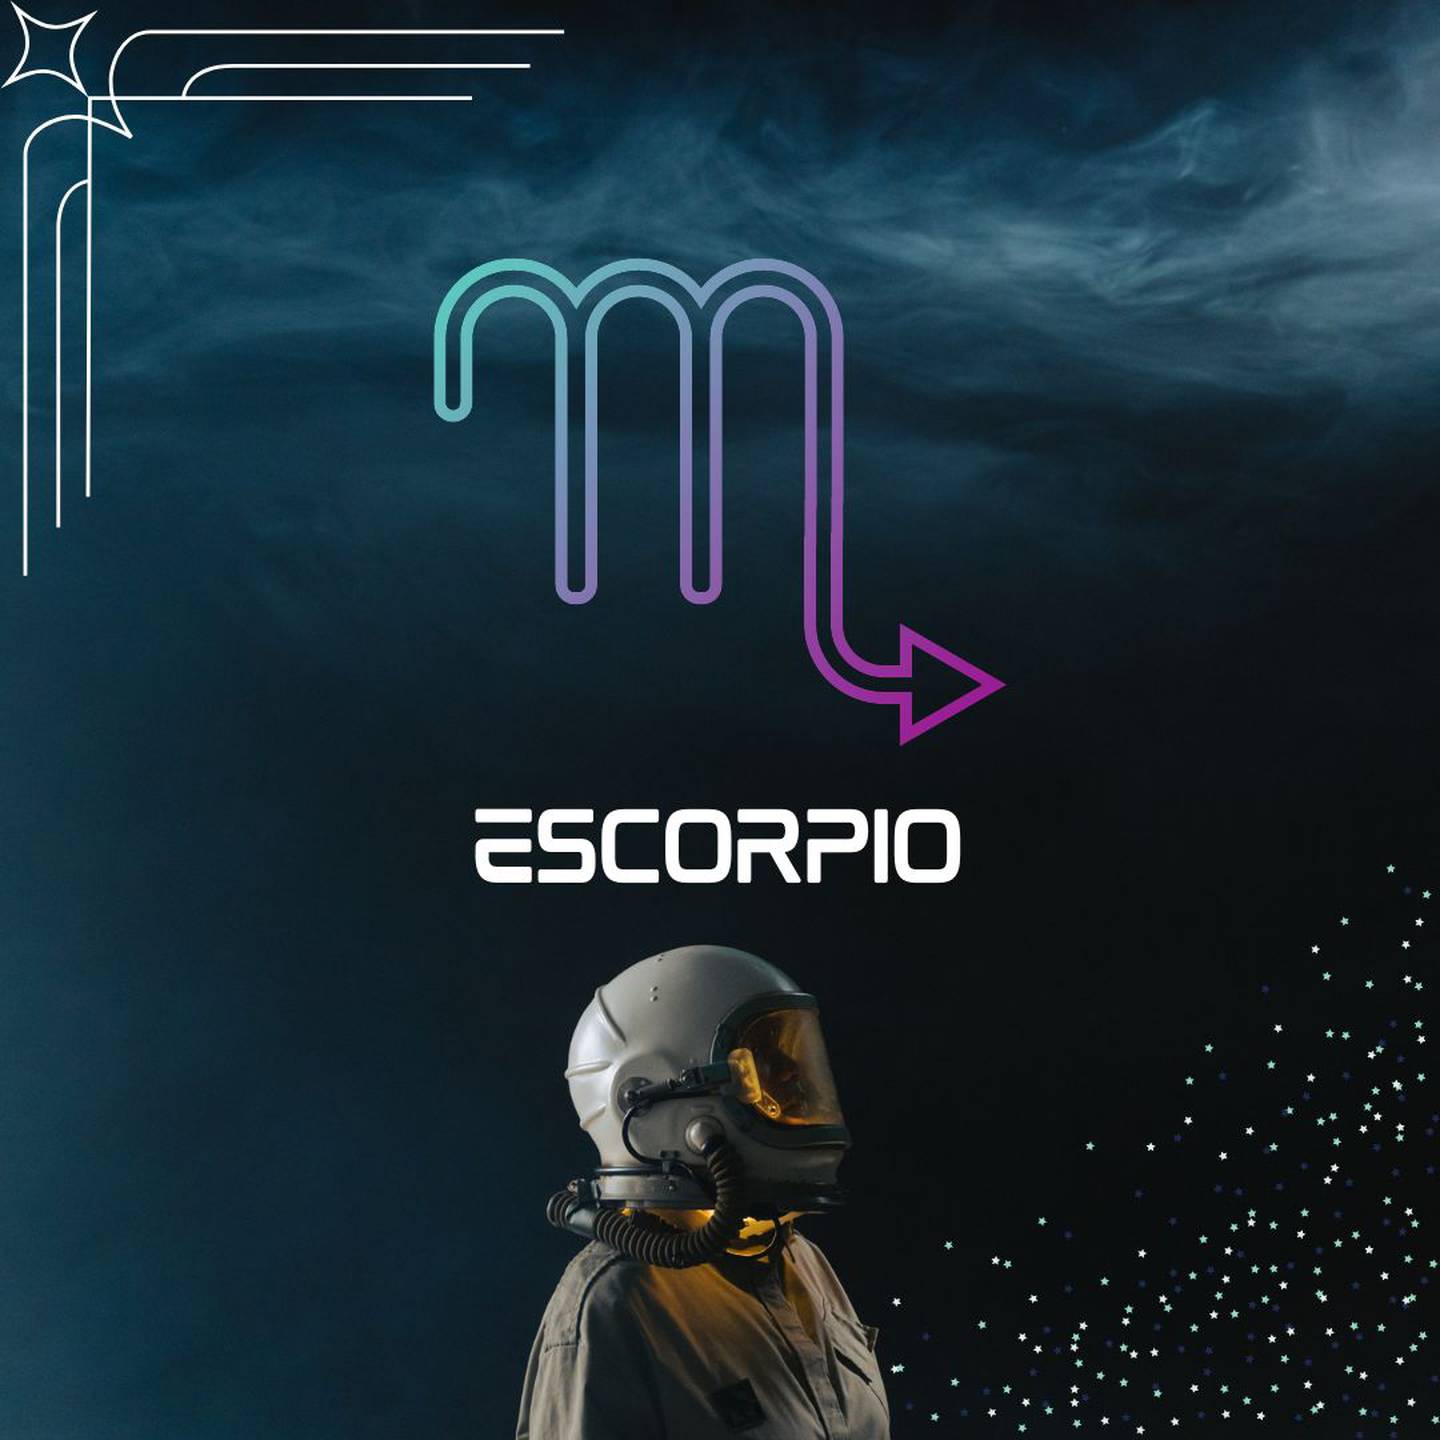 Sobre un fondo oscuro, con humo en la parte superior, aparece el símbolo de Escorpio. Al centro aparece el nombre del signo en color blanco y todavía más abajo, un astronauta está mirando hacia la derecha.